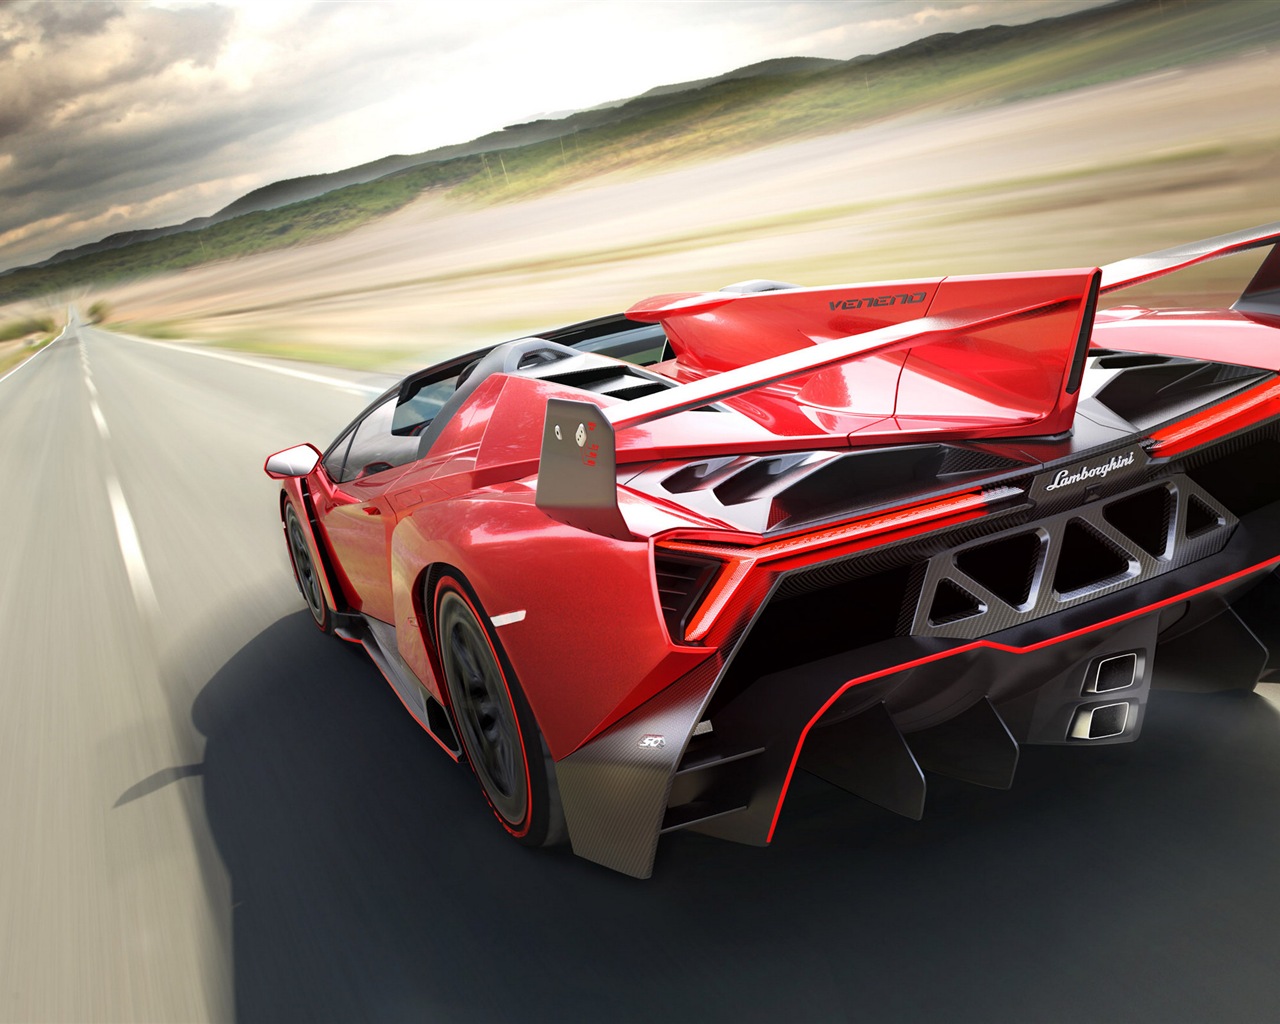 2014 Lamborghini Veneno Roadster red supercar HD wallpapers #2 - 1280x1024